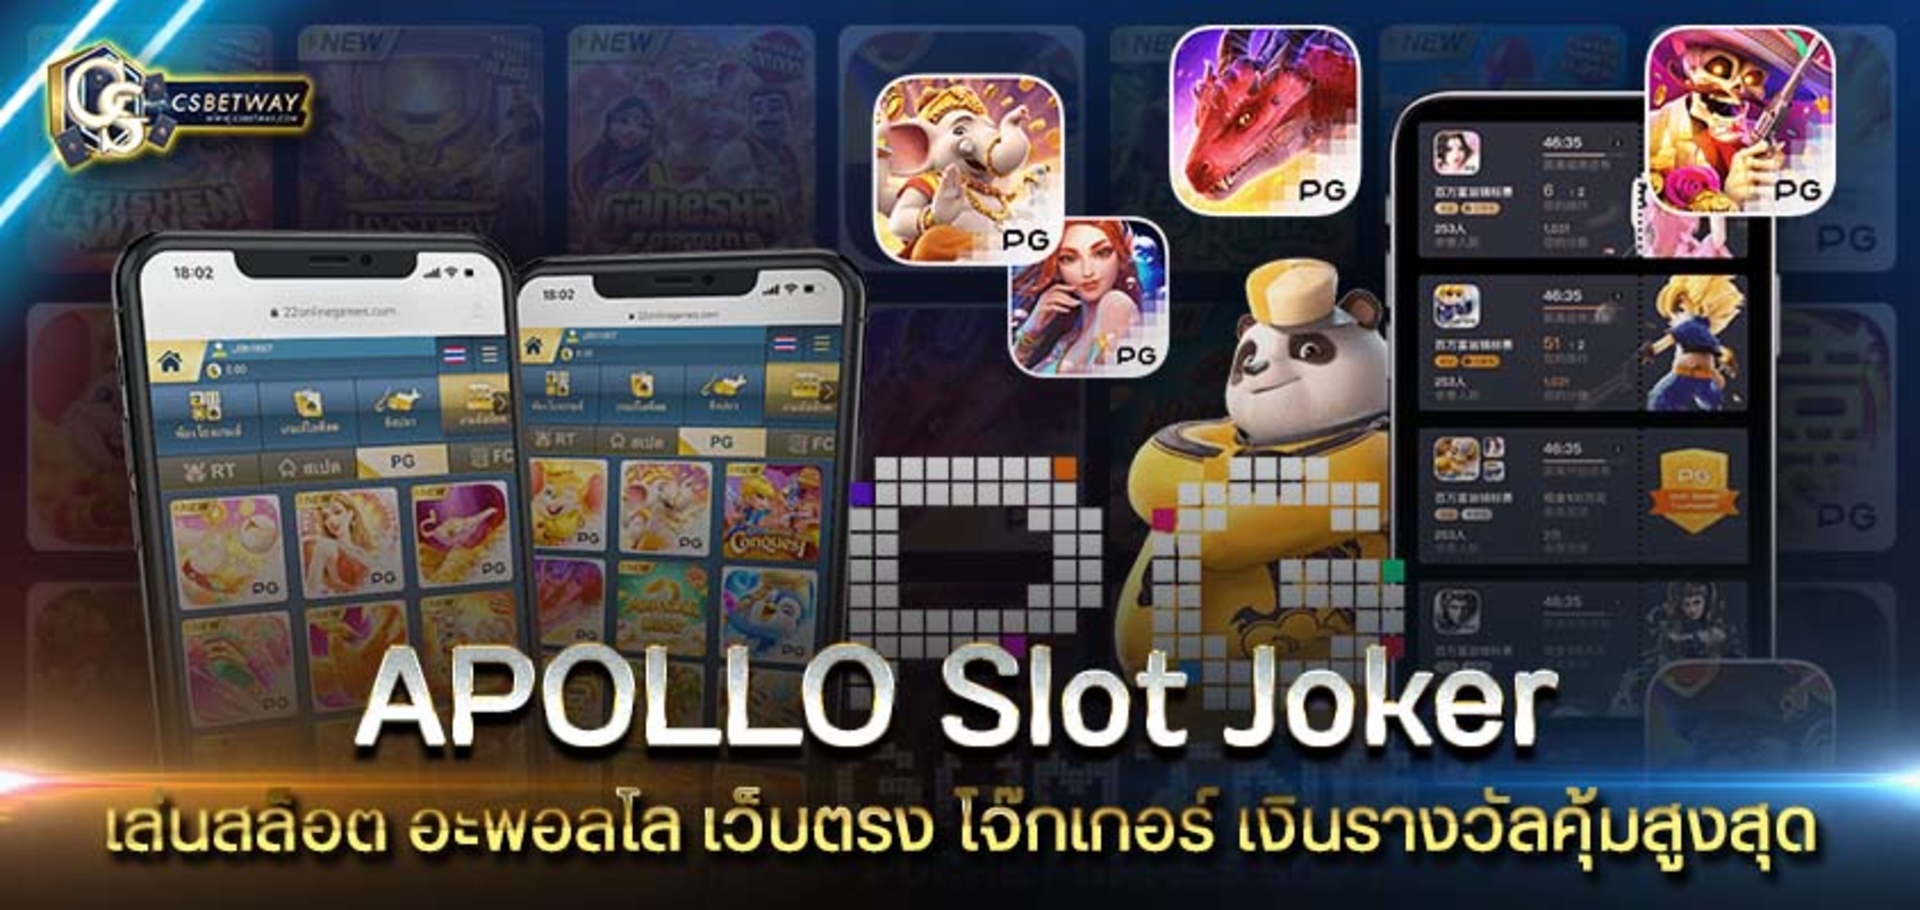 APOLLO slot Joker เล่นสล็อต อะพอลโล เว็บตรง โจ๊กเกอร์ เงินรางวัลคุ้มสูงสุด